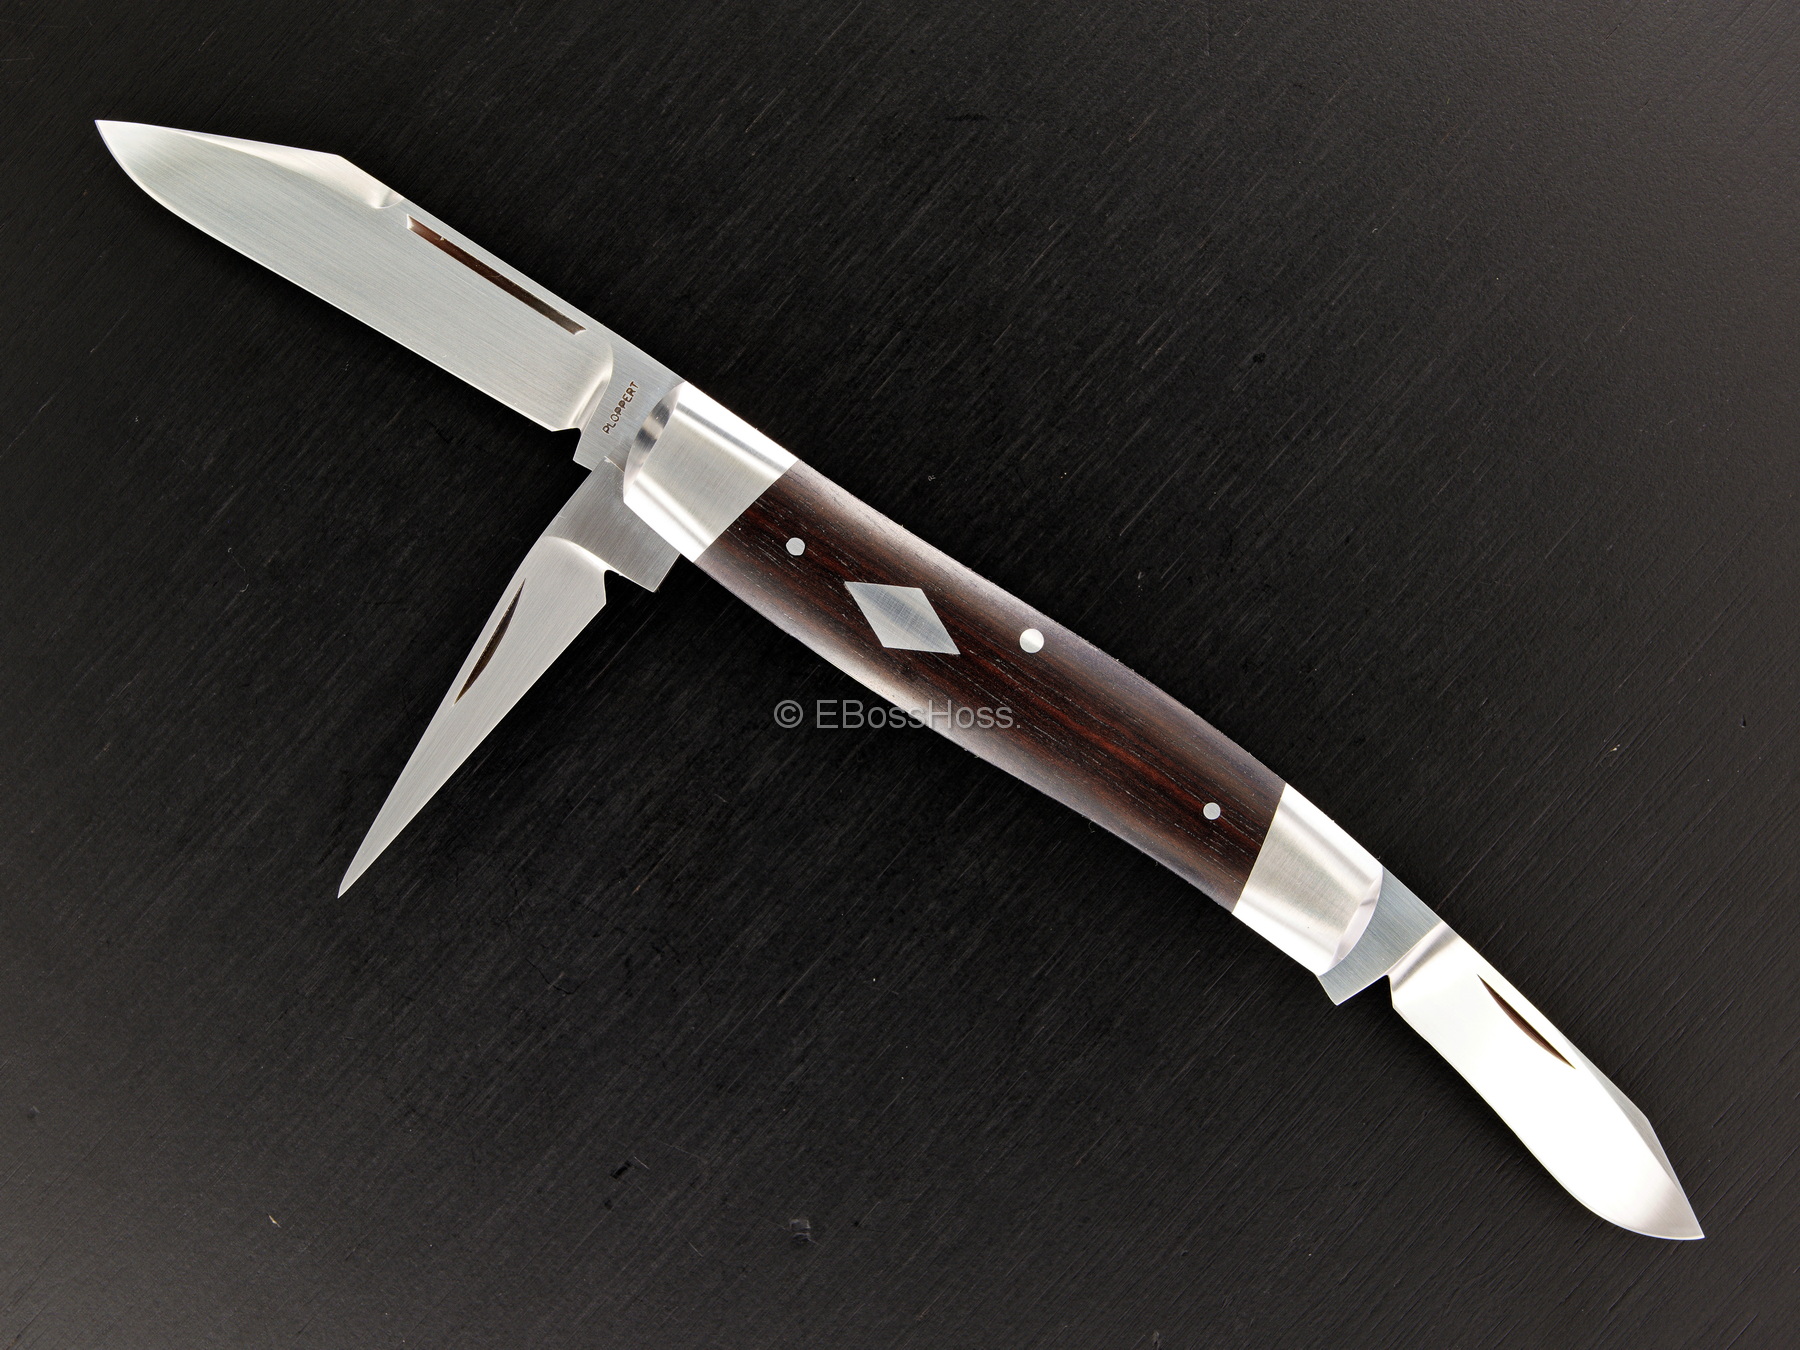 Tom Ploppert Custom Diamond Edge Cattle Knives Set with Display Case